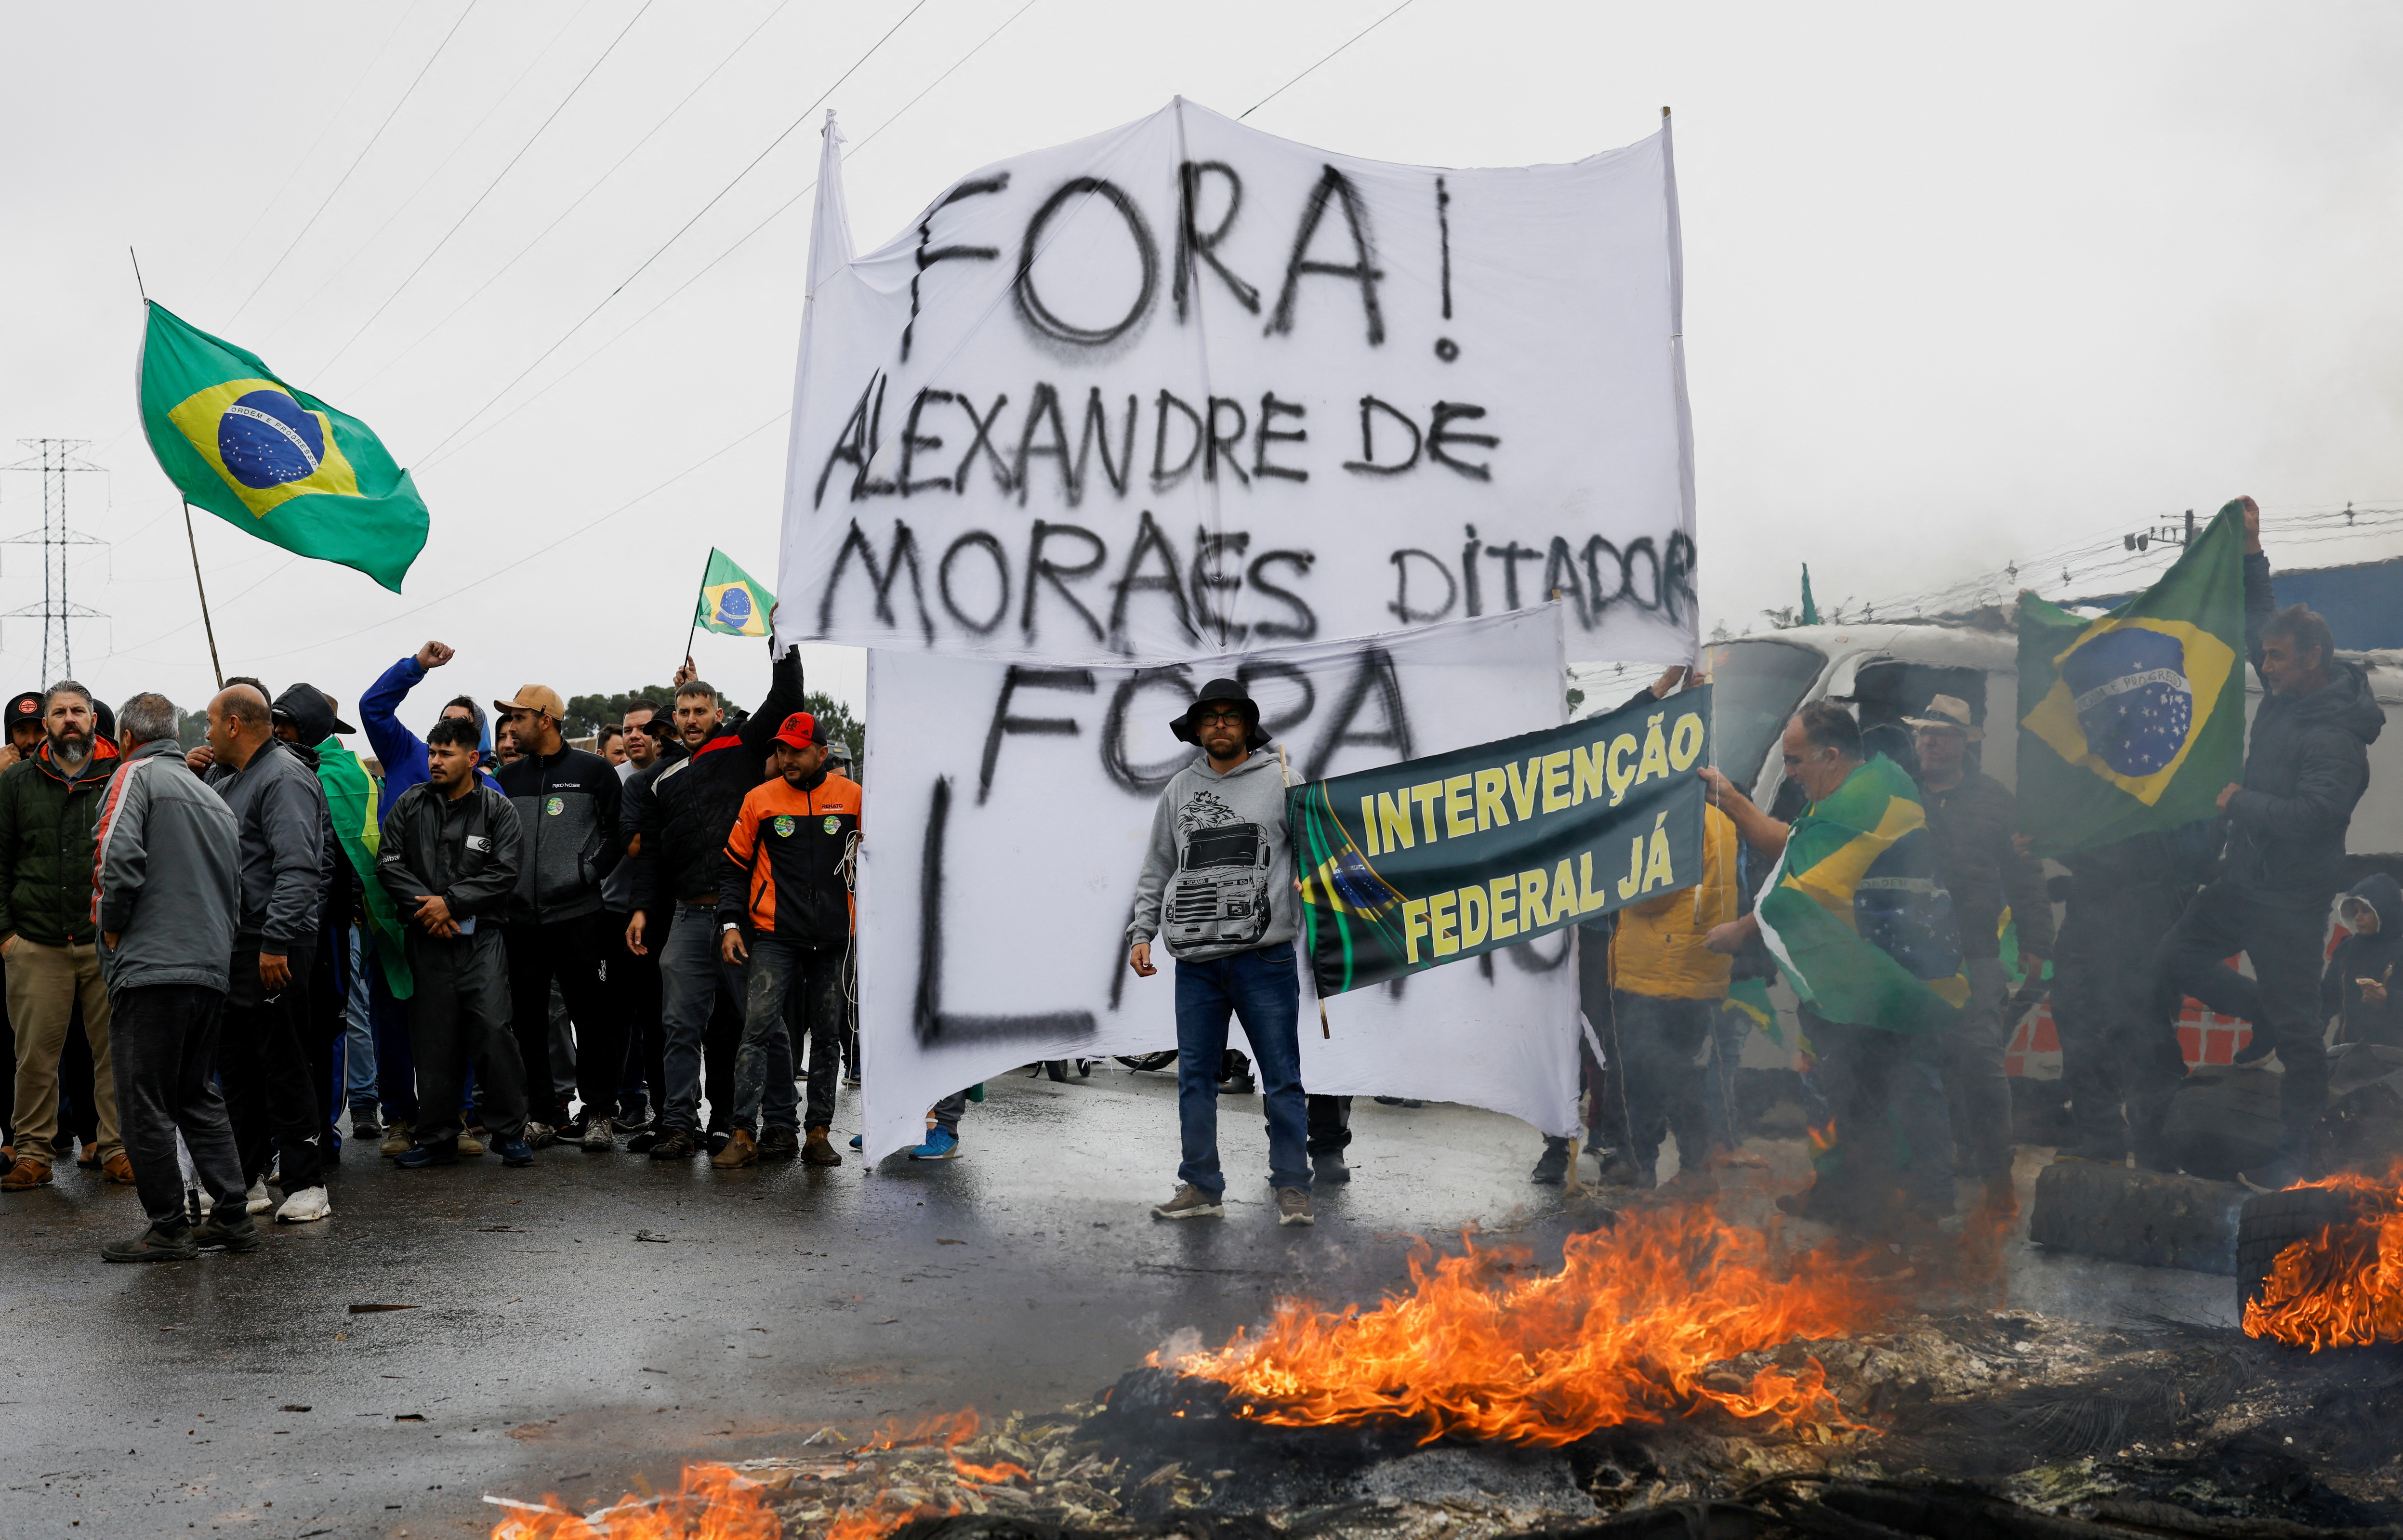 Los partidarios del presidente de Brasil, Jair Bolsonaro, en su mayoría camioneros, sostienen carteles y banderas mientras bloquean una carretera durante una protesta por la derrota de Bolsonaro, el 1 de noviembre de 2022 (REUTERS/Rodolfo Buhrer)